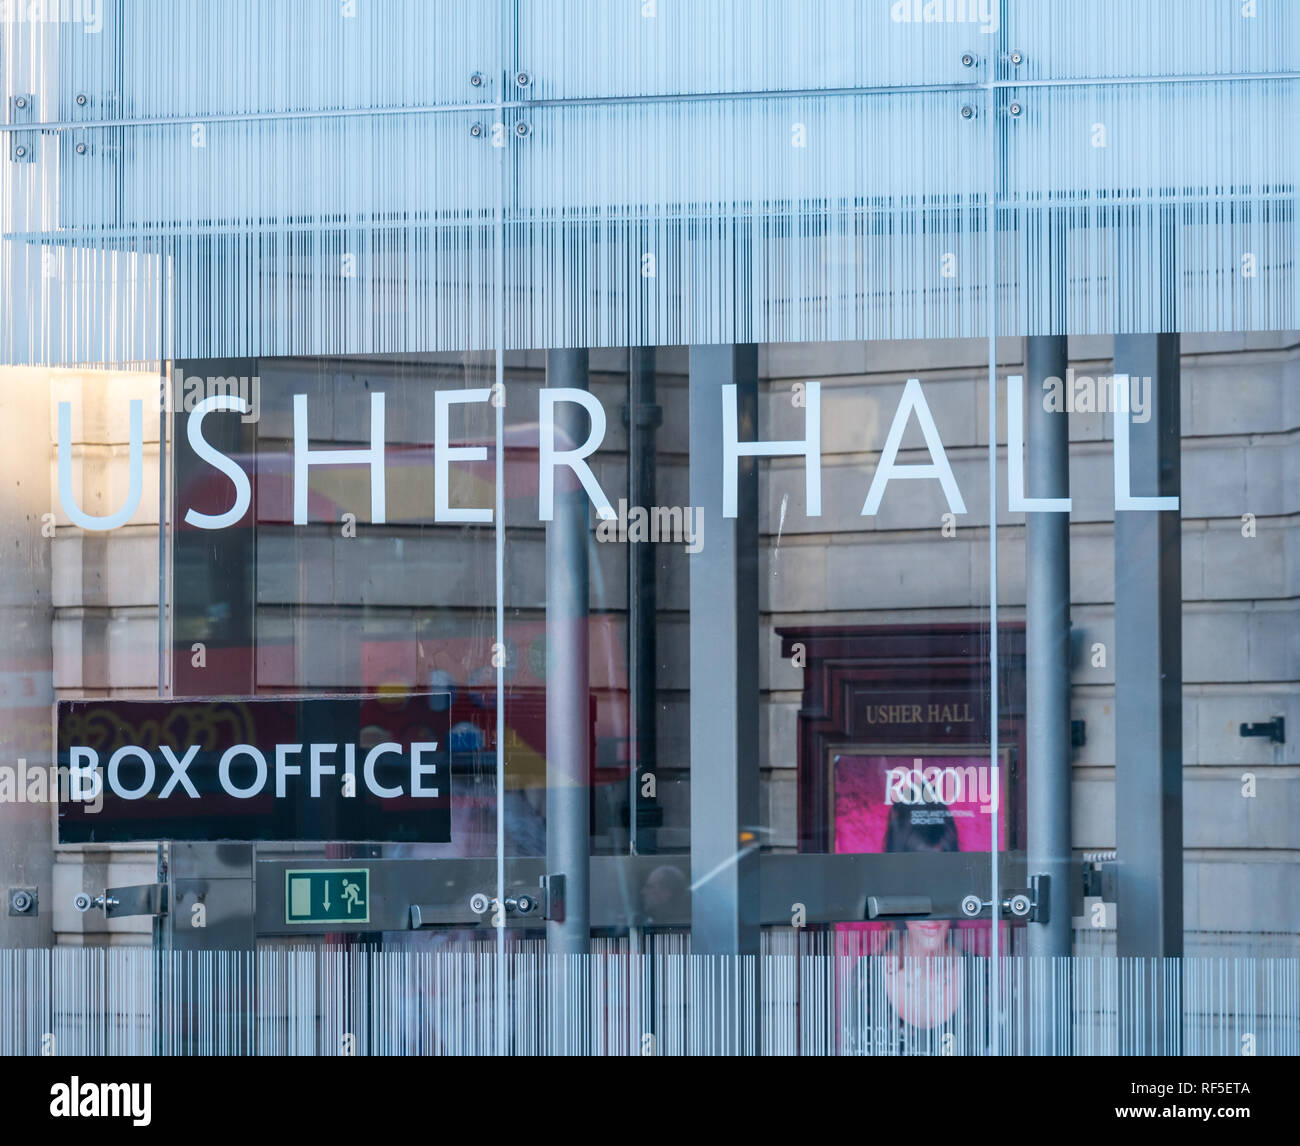 Chiusura del Box Office nella moderna estensione, Usher Hall, Lothian Road, Edimburgo, Scozia, Regno Unito Foto Stock